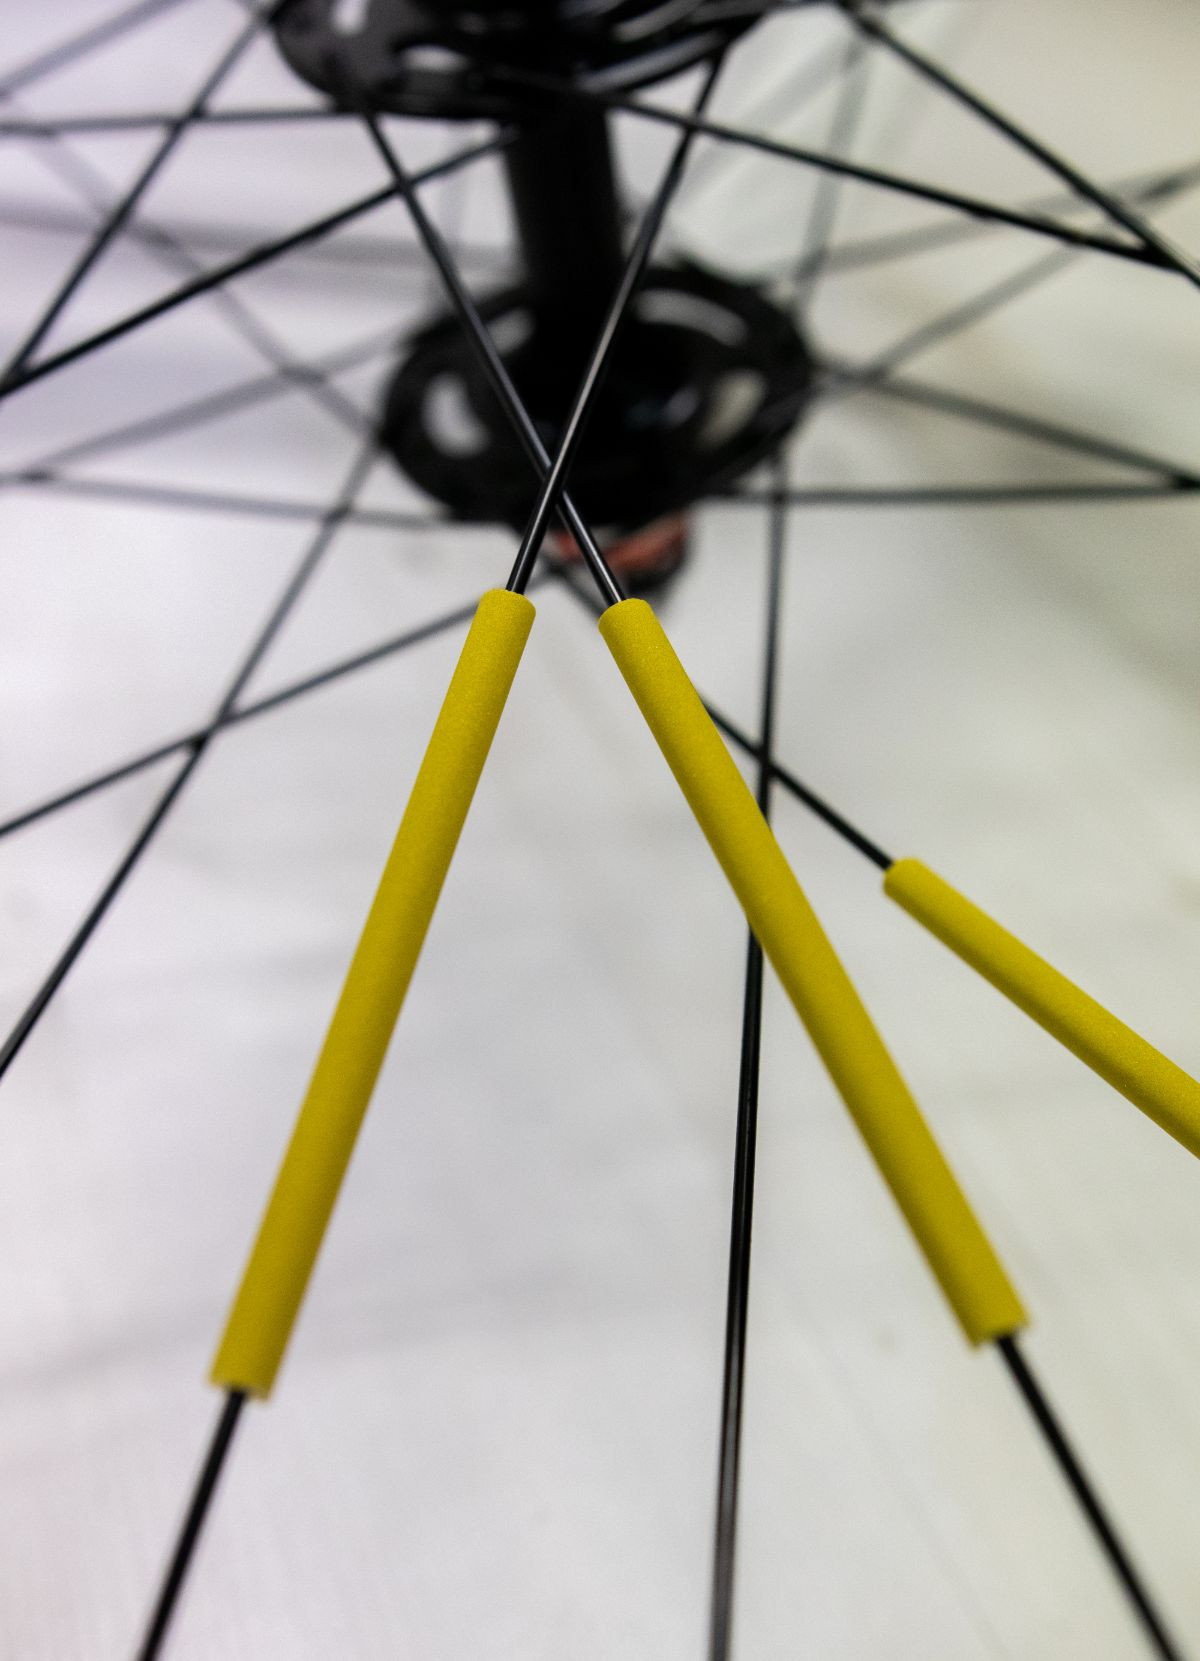 Réflecteurs roue de vélo rose bonbon - Rainette - L'Atelier du